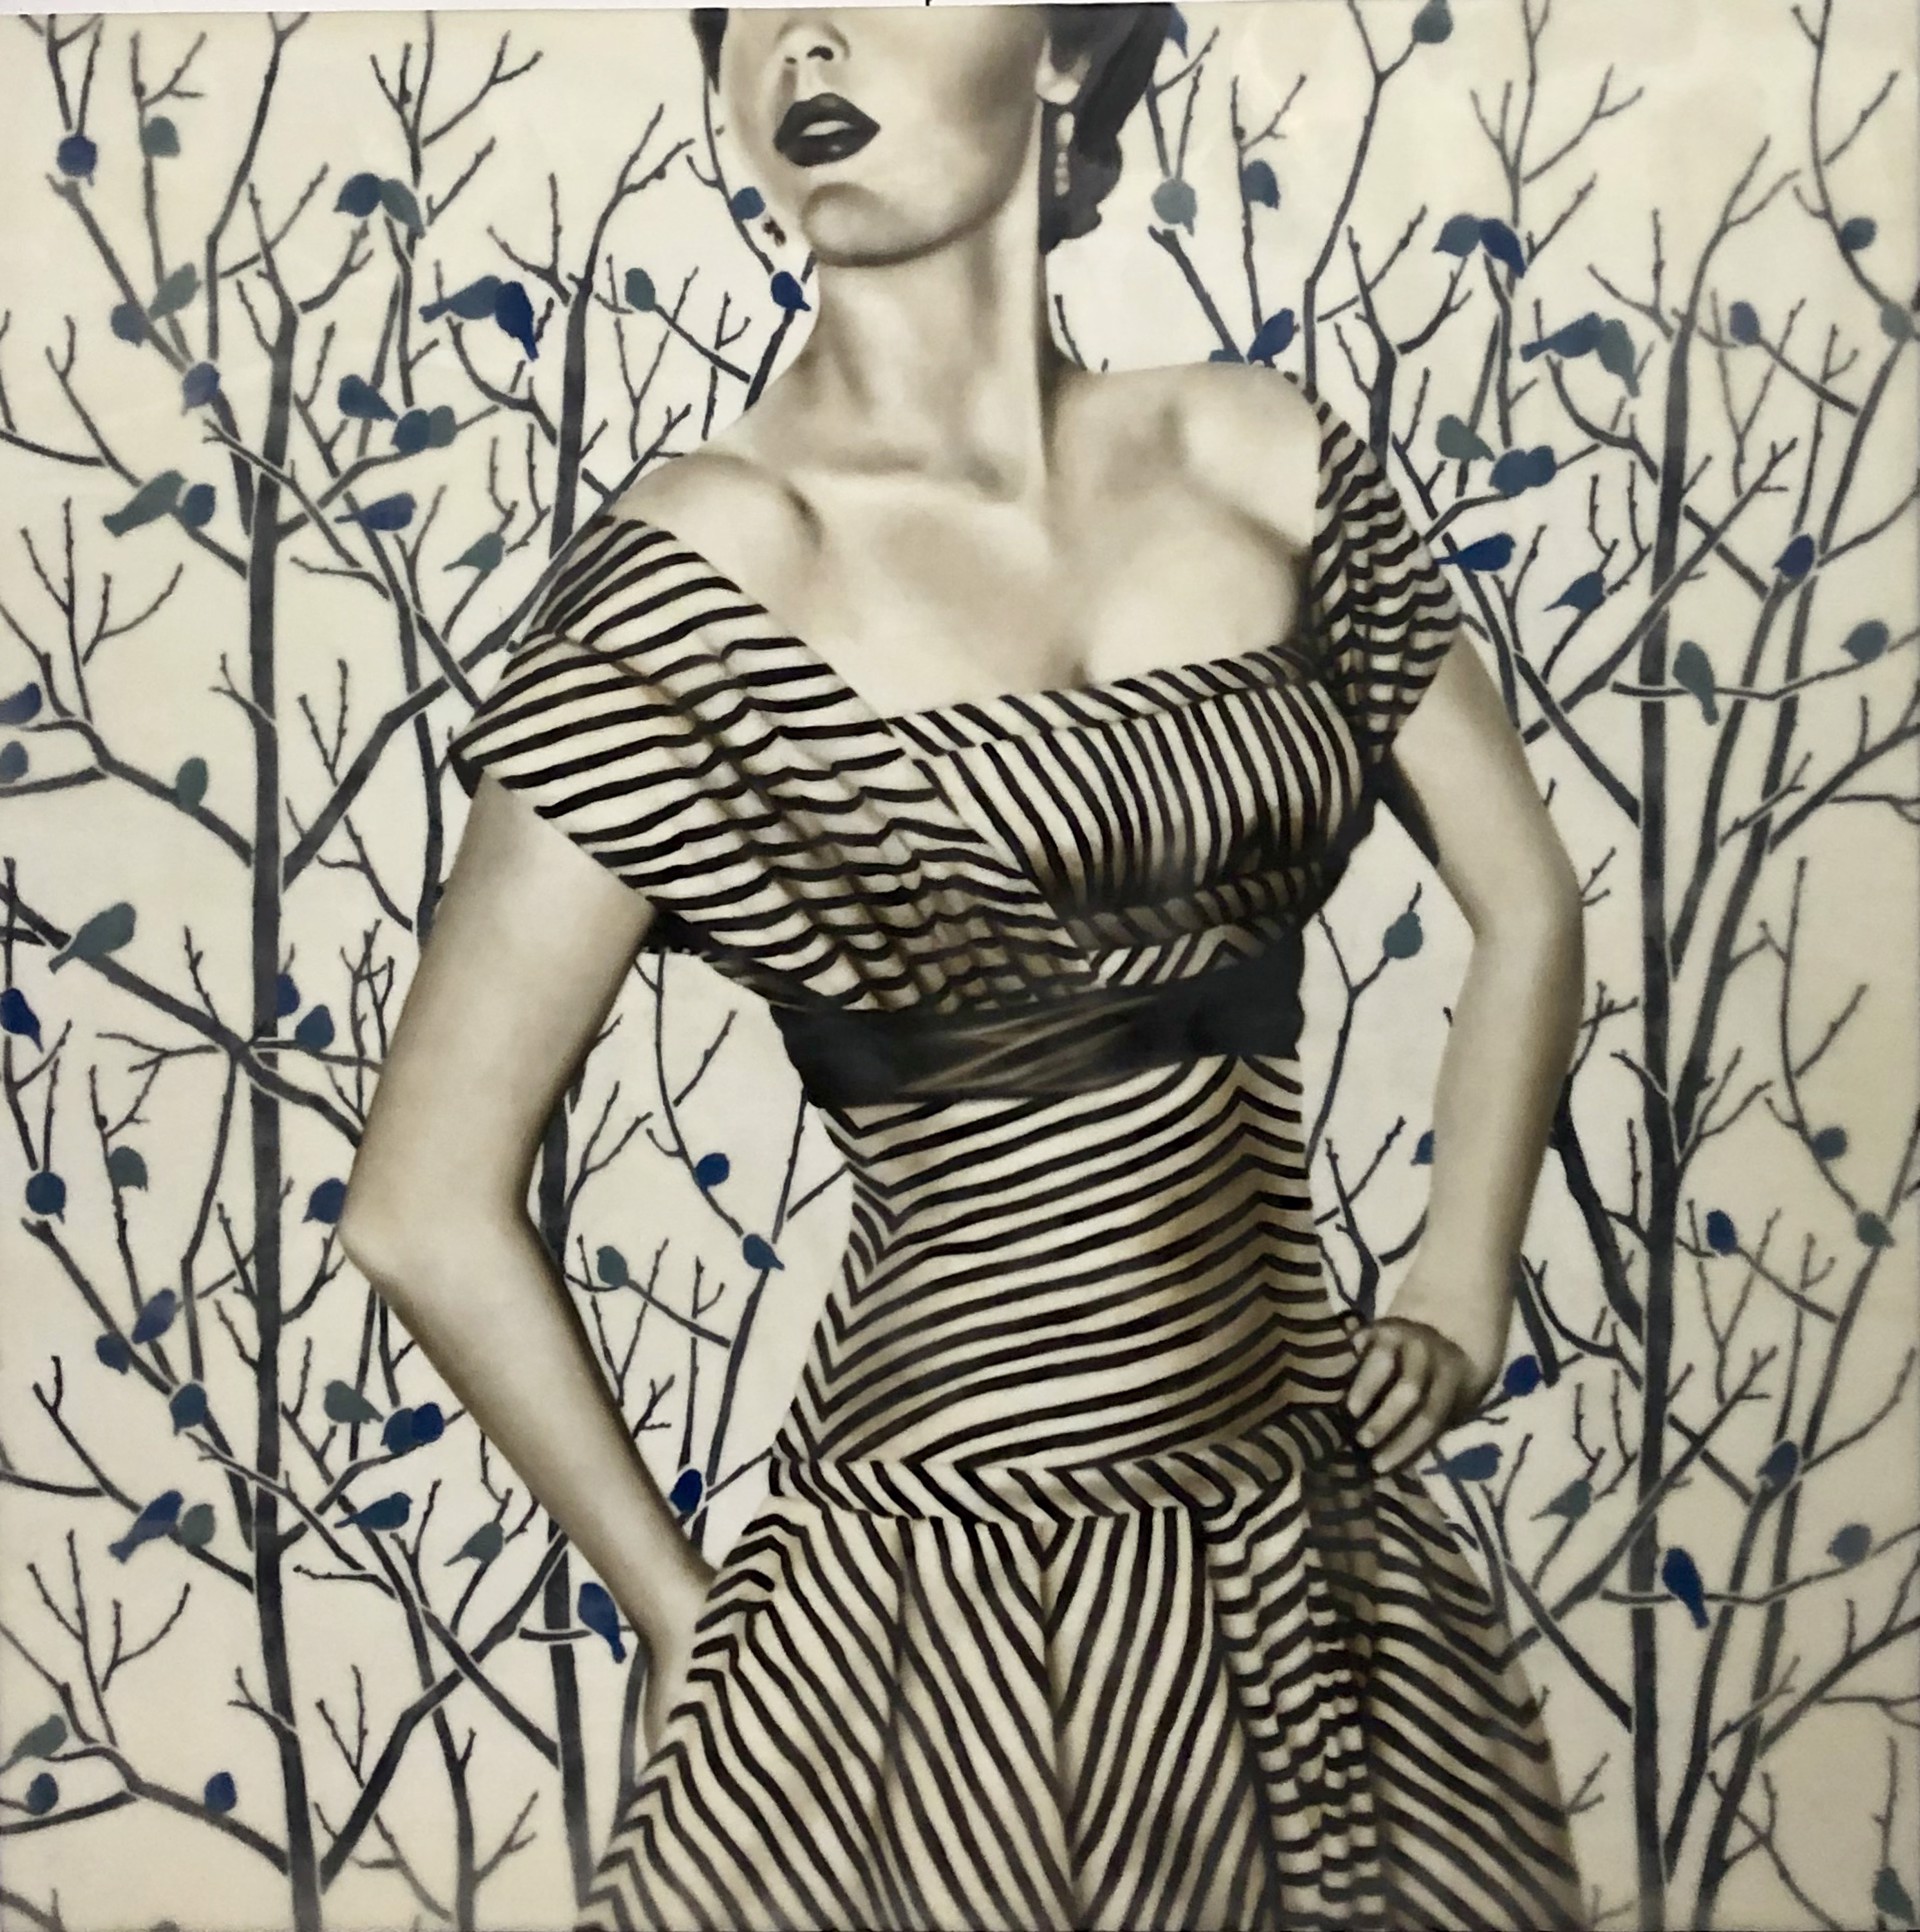 Striped Beauty by Jhina Alvarado